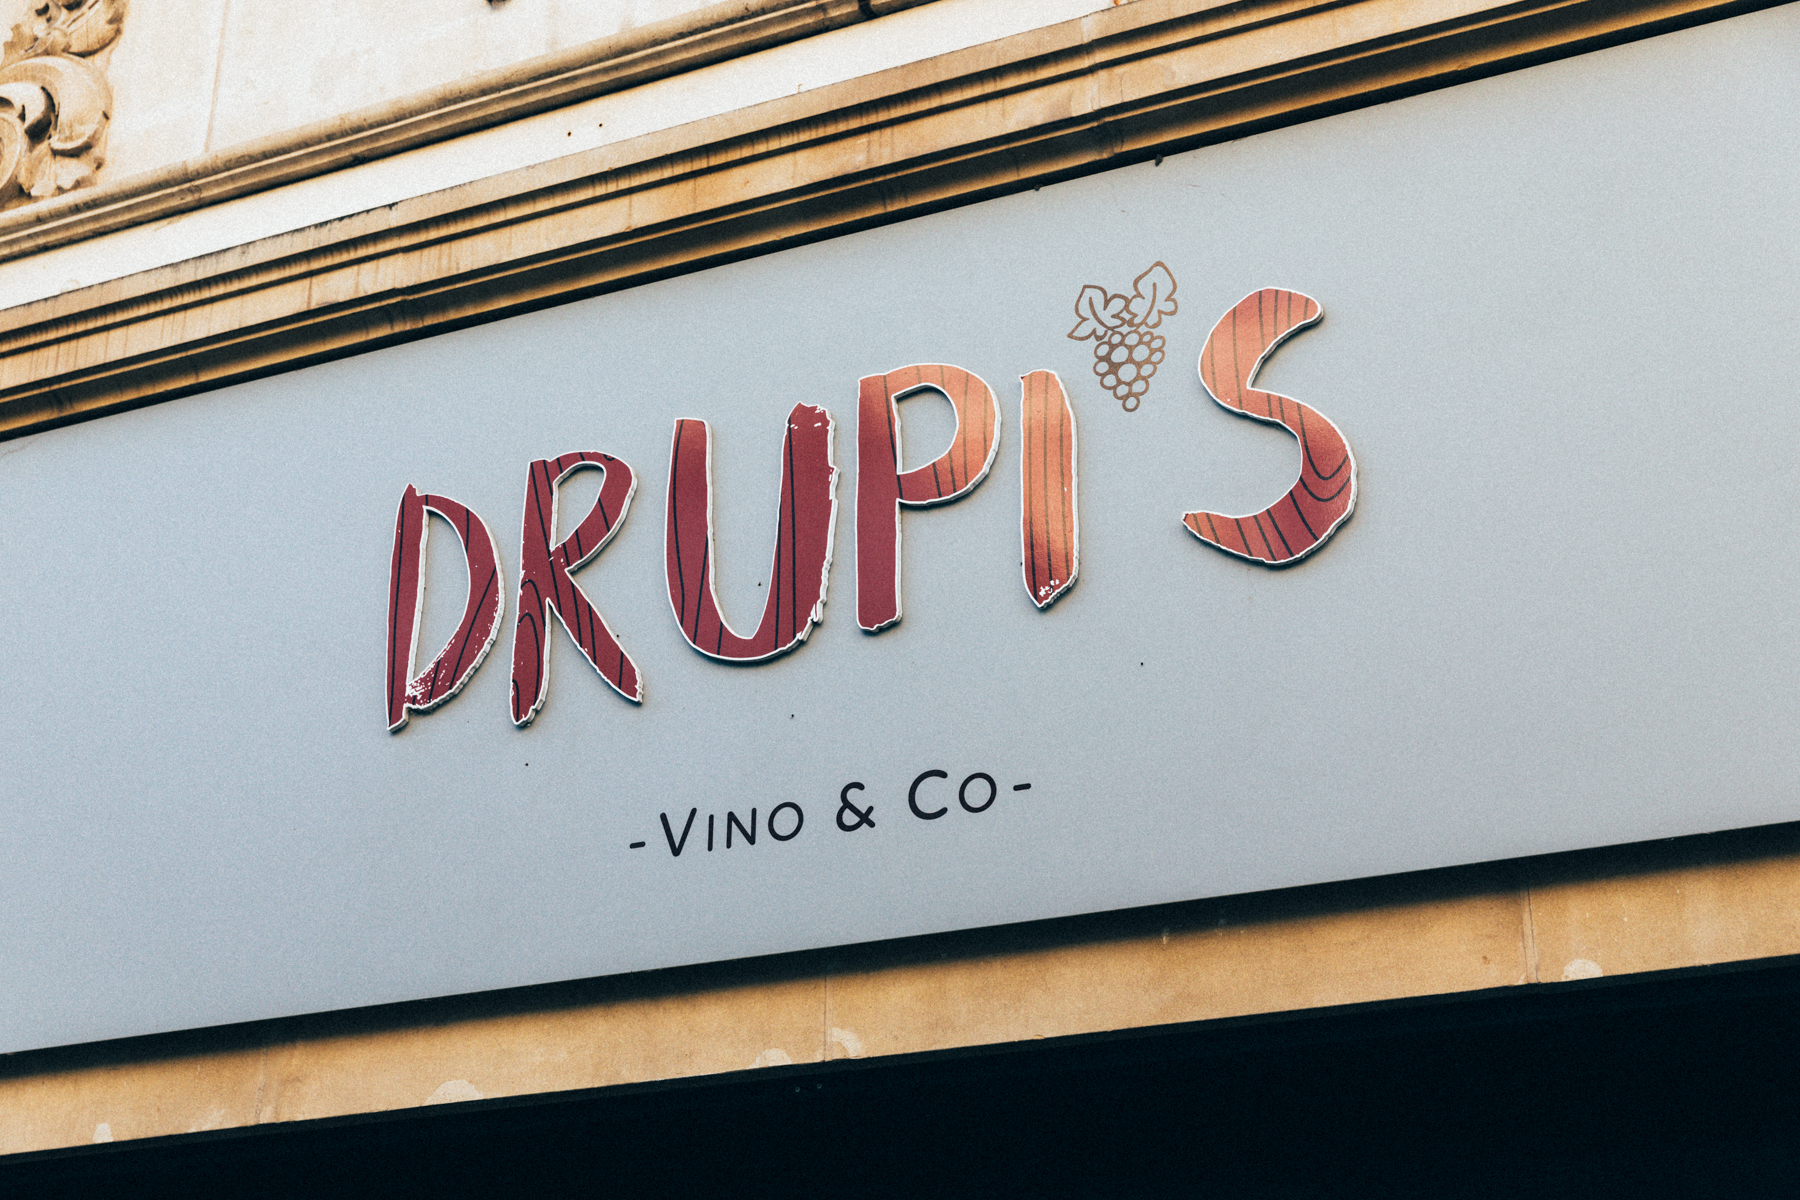 Drupi’s Vino & Co. – E gudde Wäin a gudder Gesellschaft